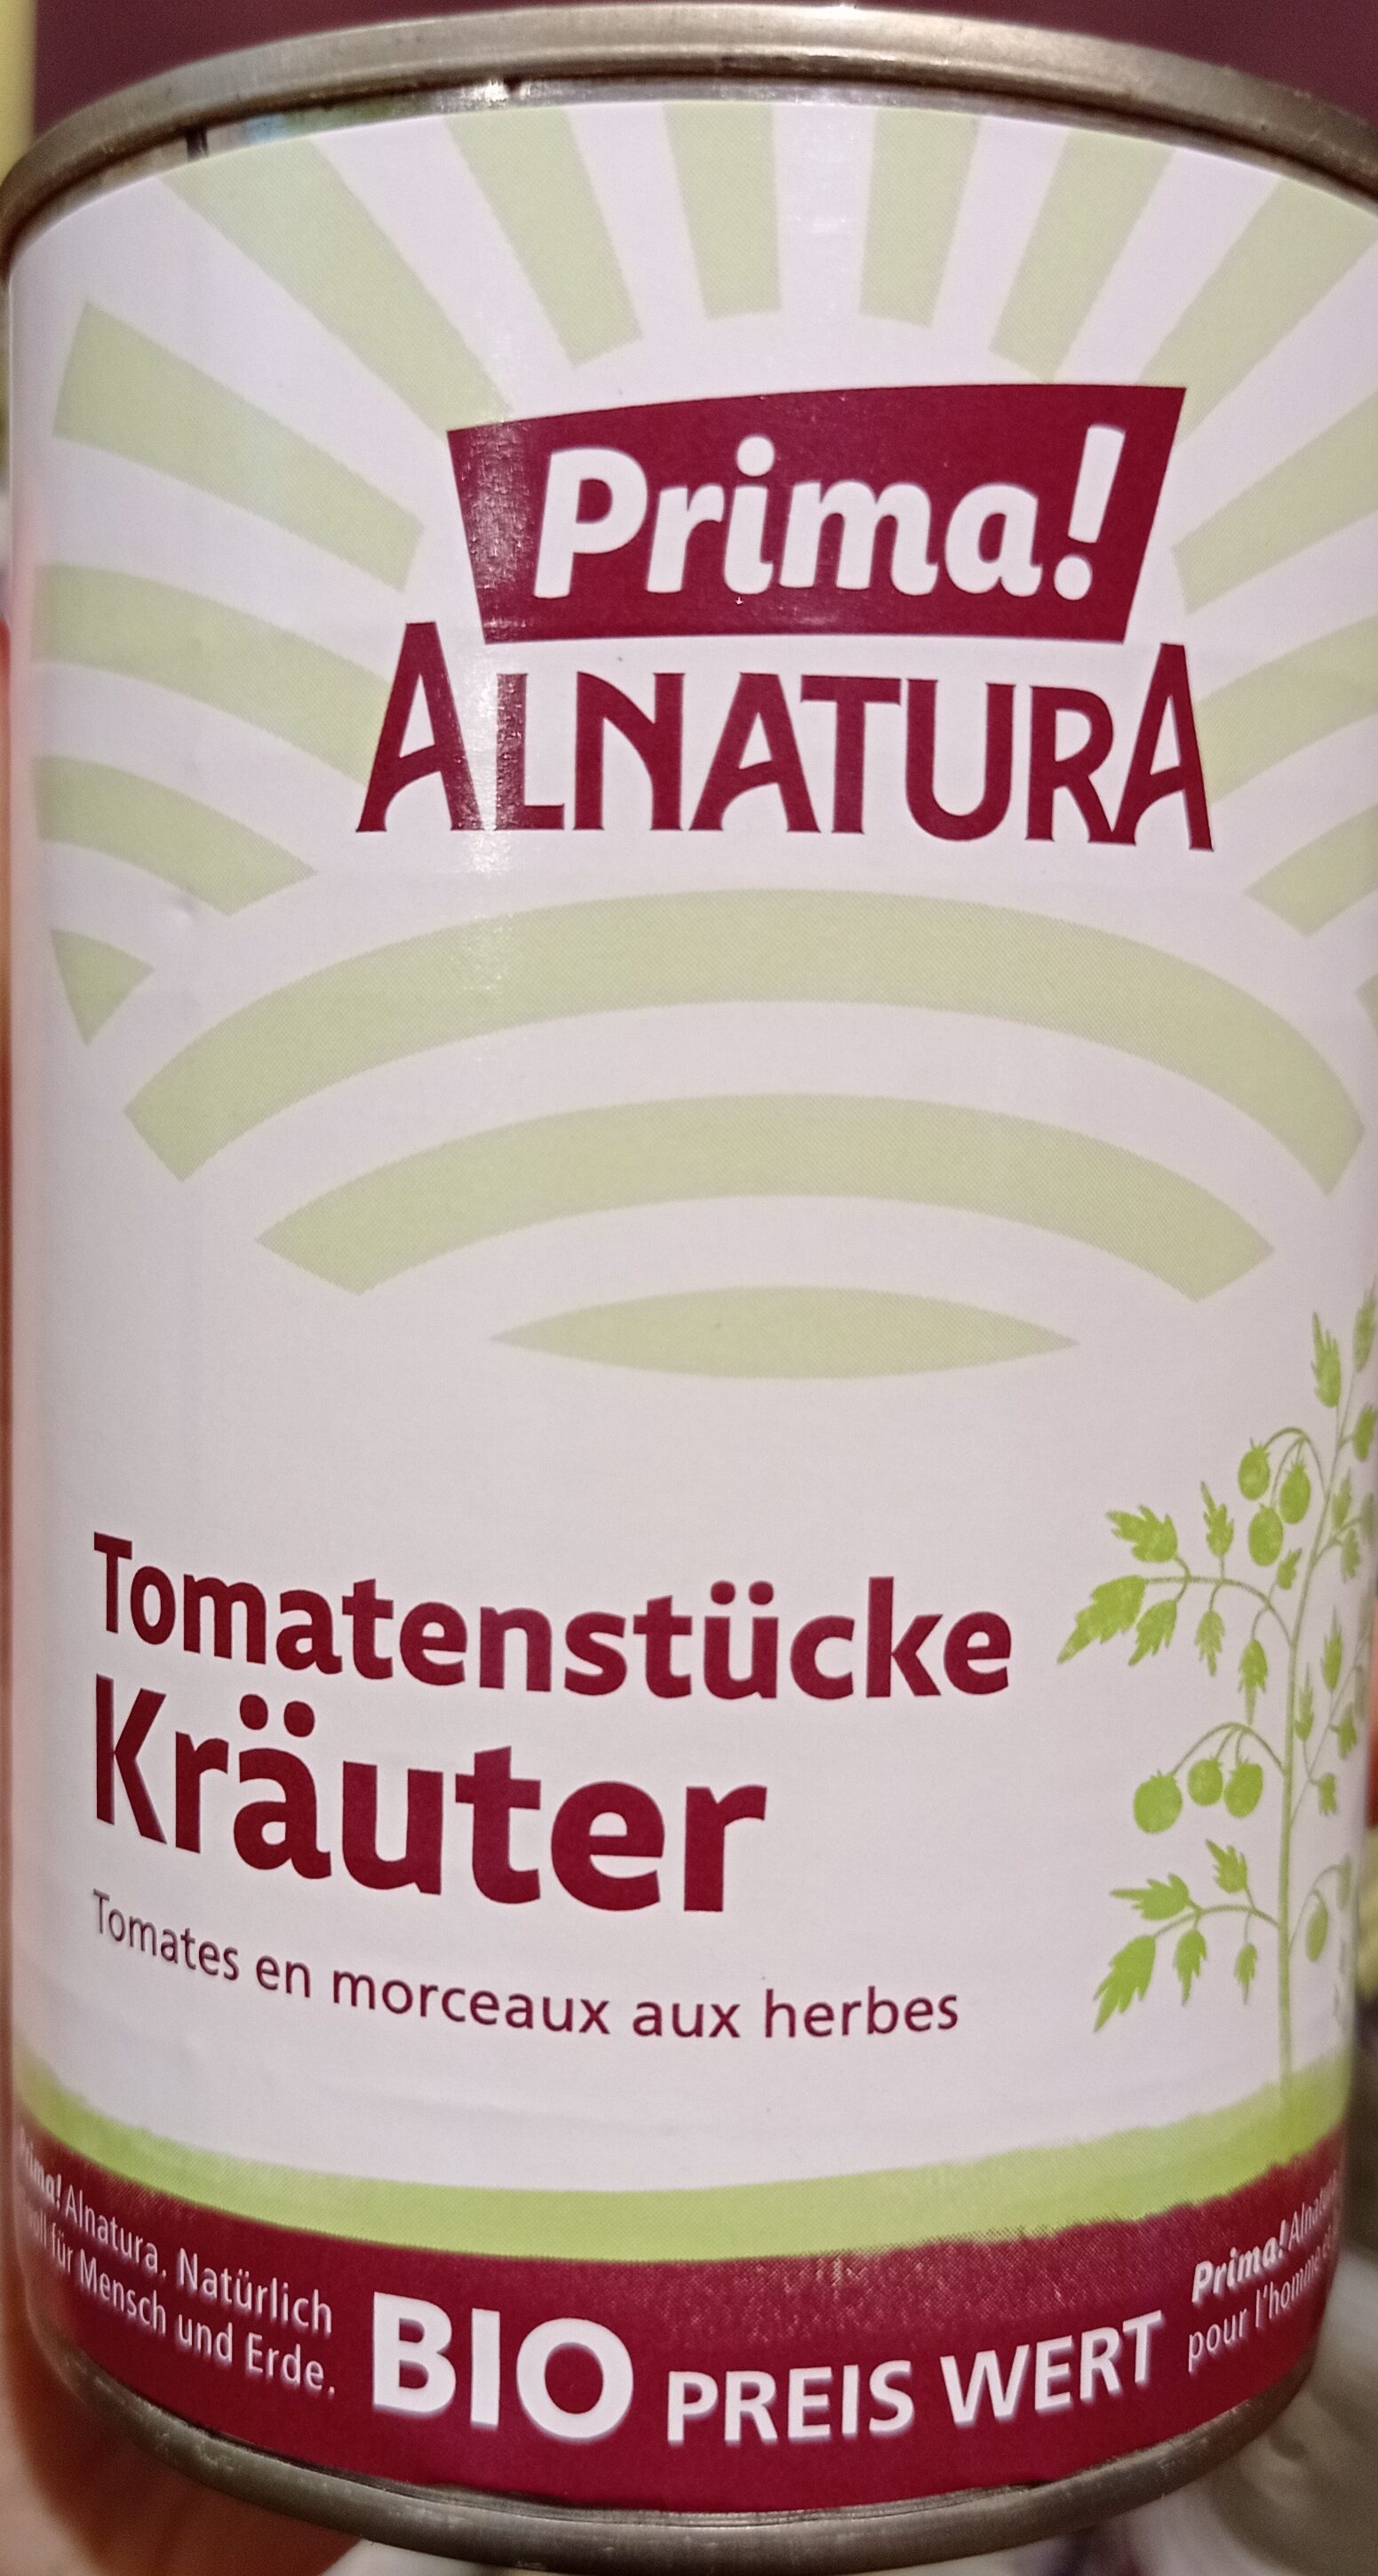 Tomatenstücke Kräuter - Produkt